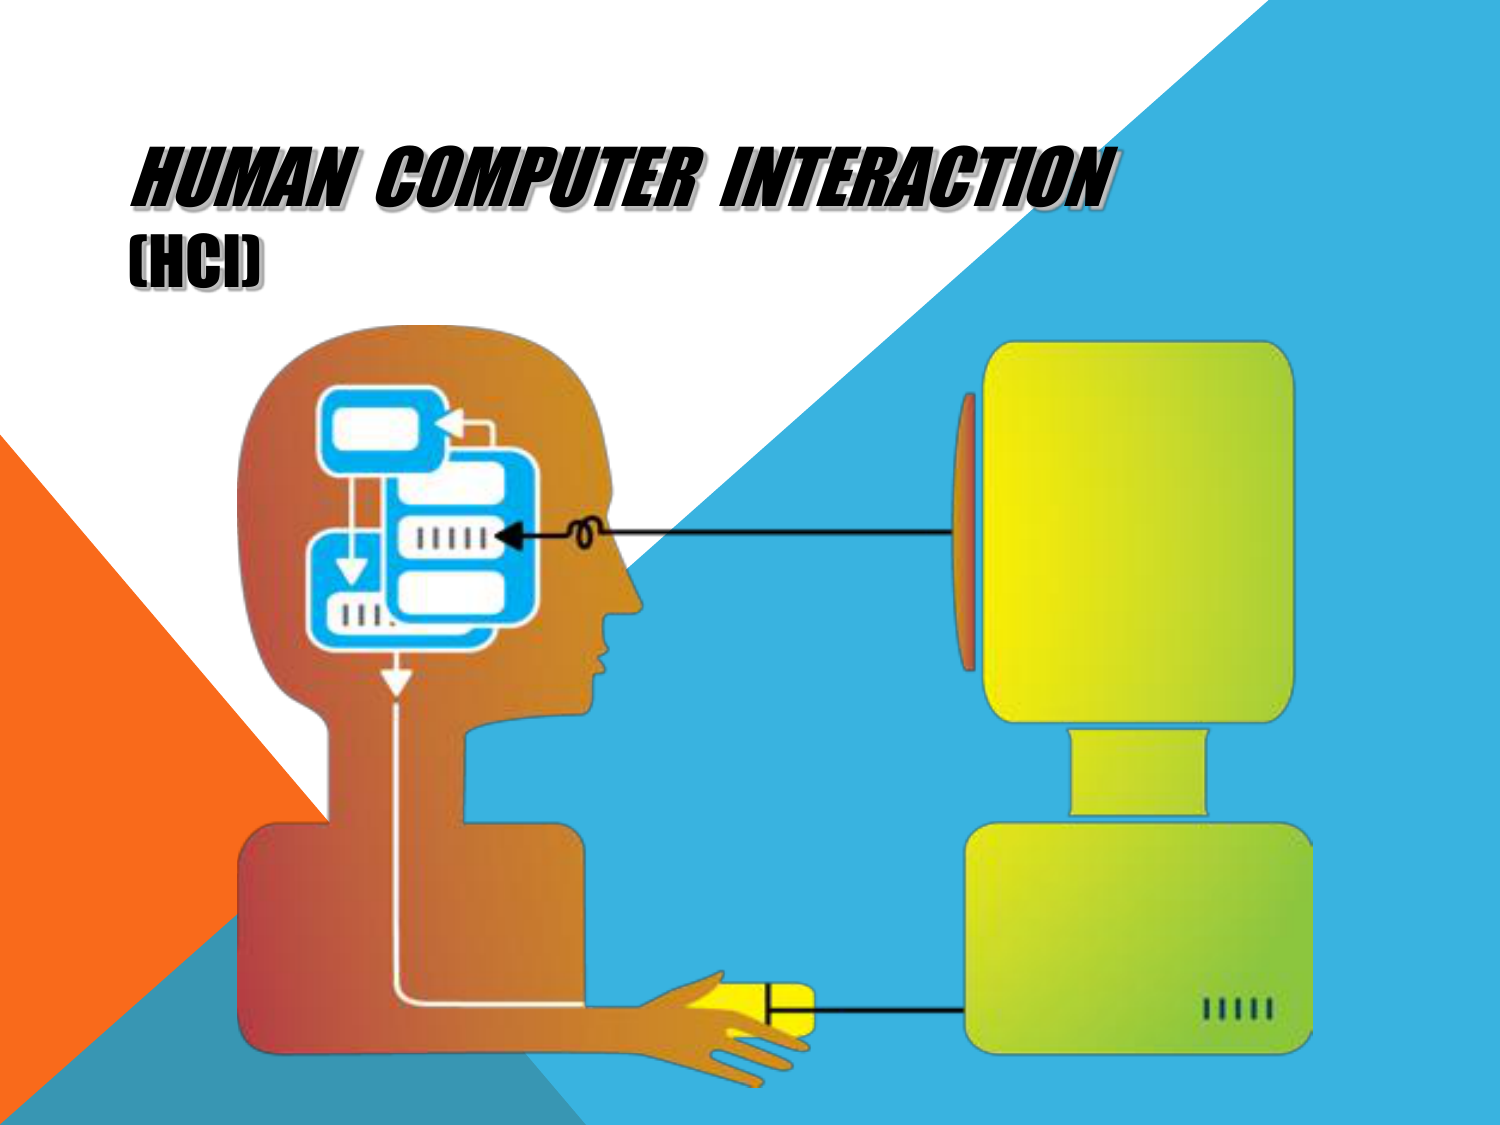 Human interaction. Human Computer interaction. Human Computer interface. HCI. Web Systems and Human-Computer interaction.